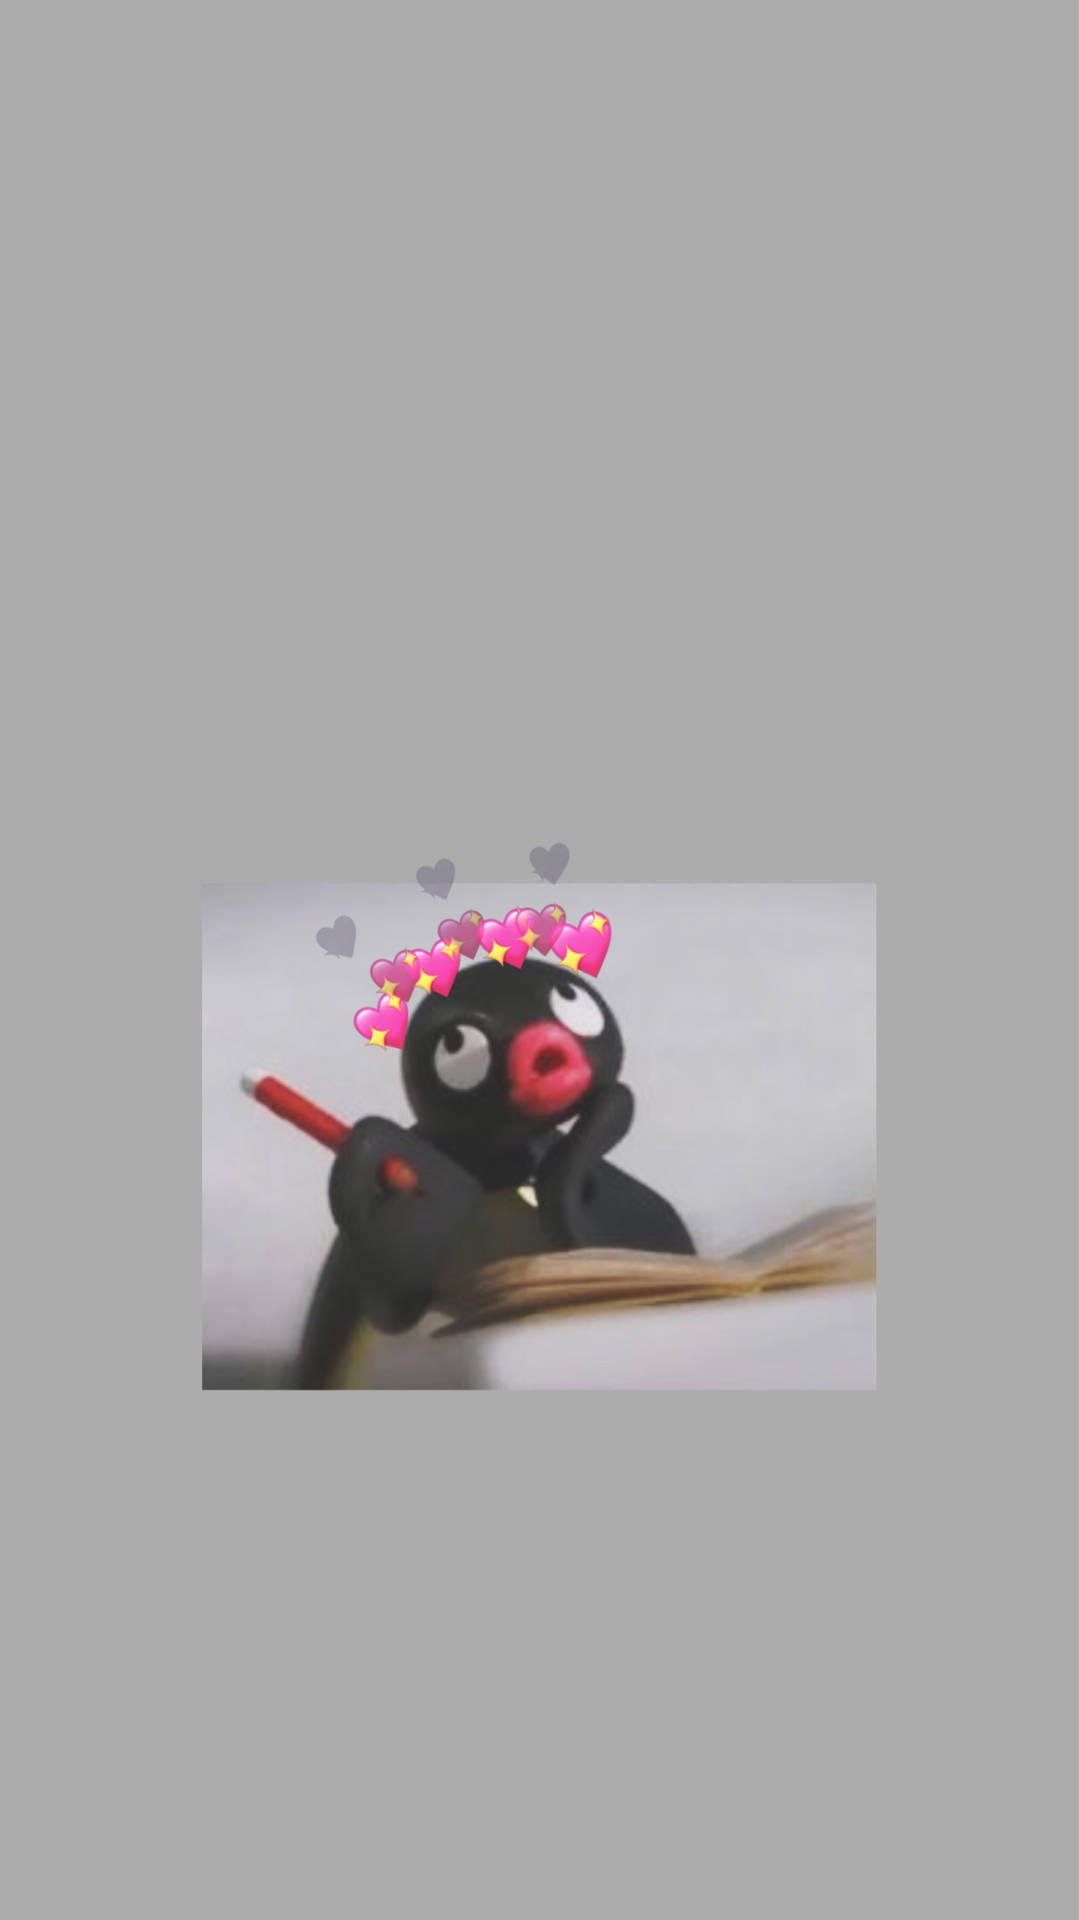 Pingu Studying Meme Background